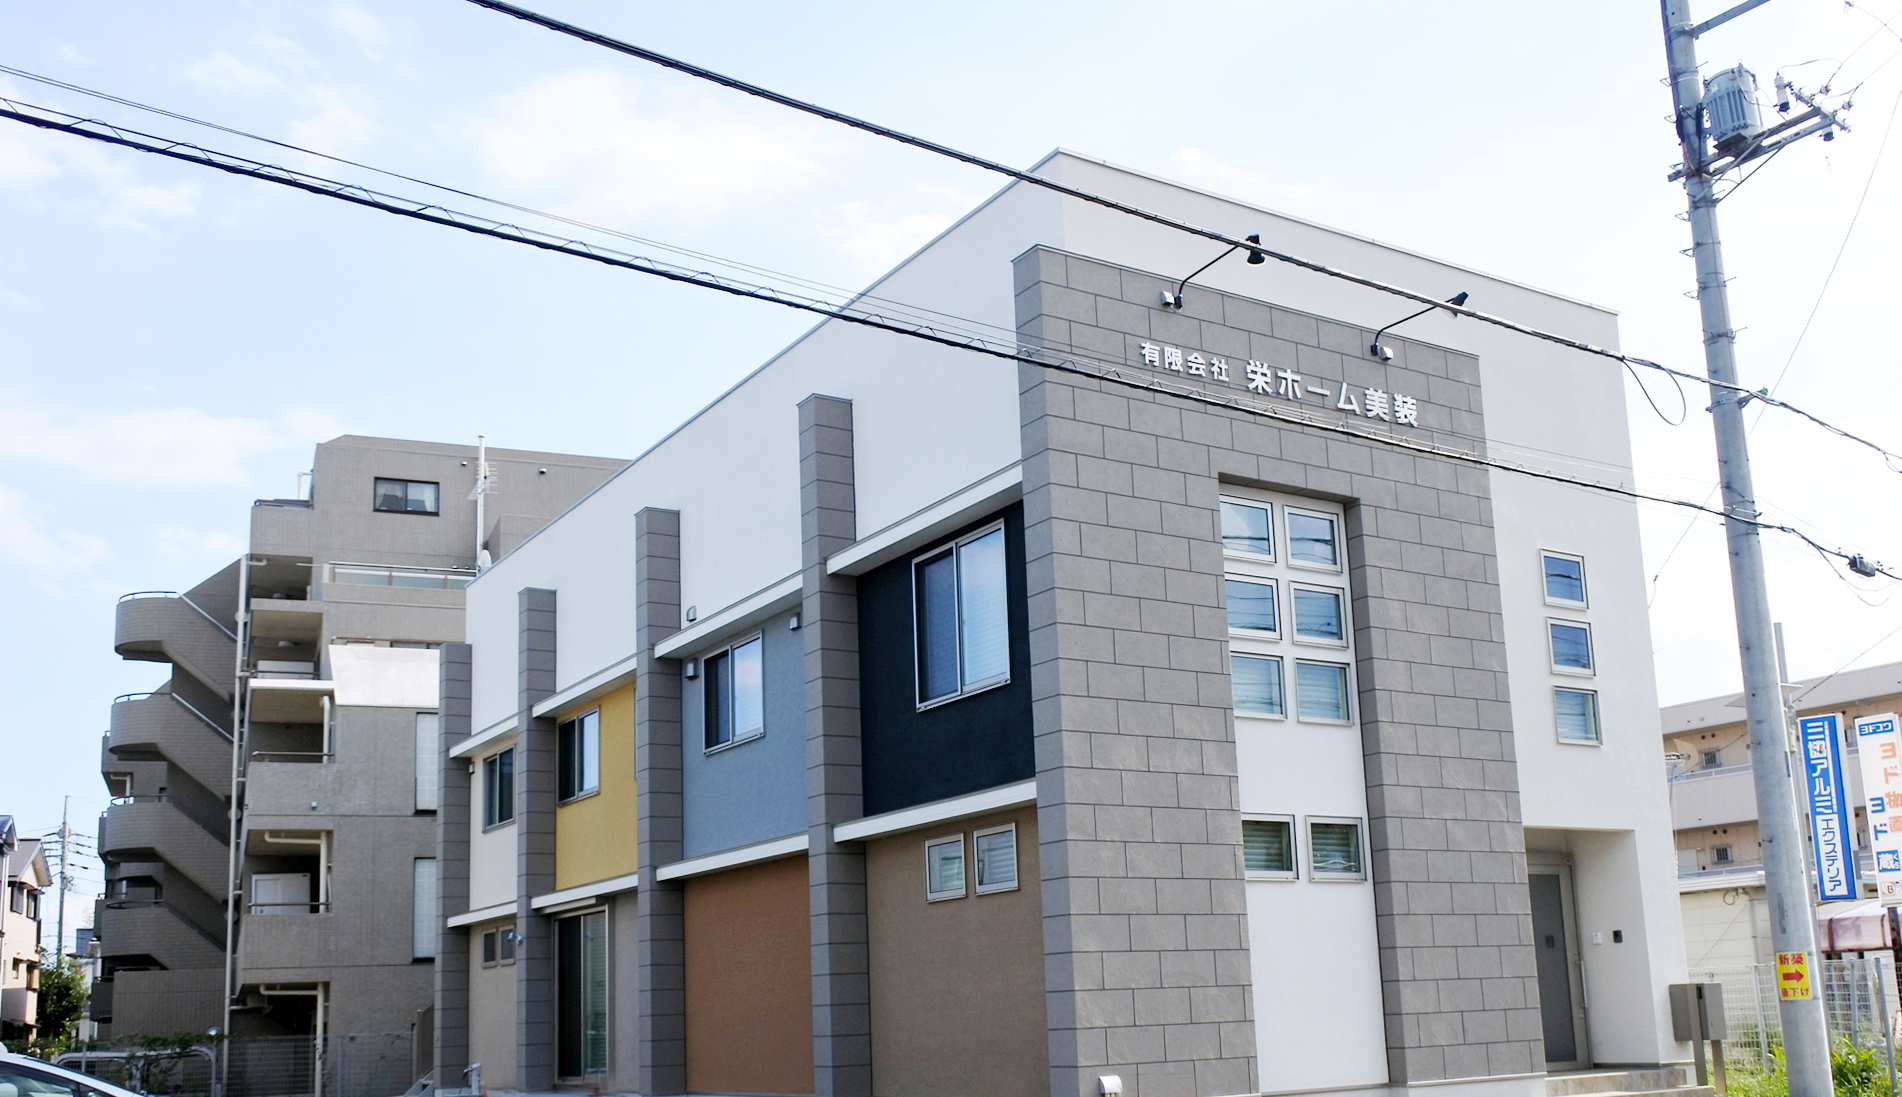 住宅外壁塗装・リフォーム、大規模改修工事なら埼玉県さいたま市の有限会社栄ホーム美装